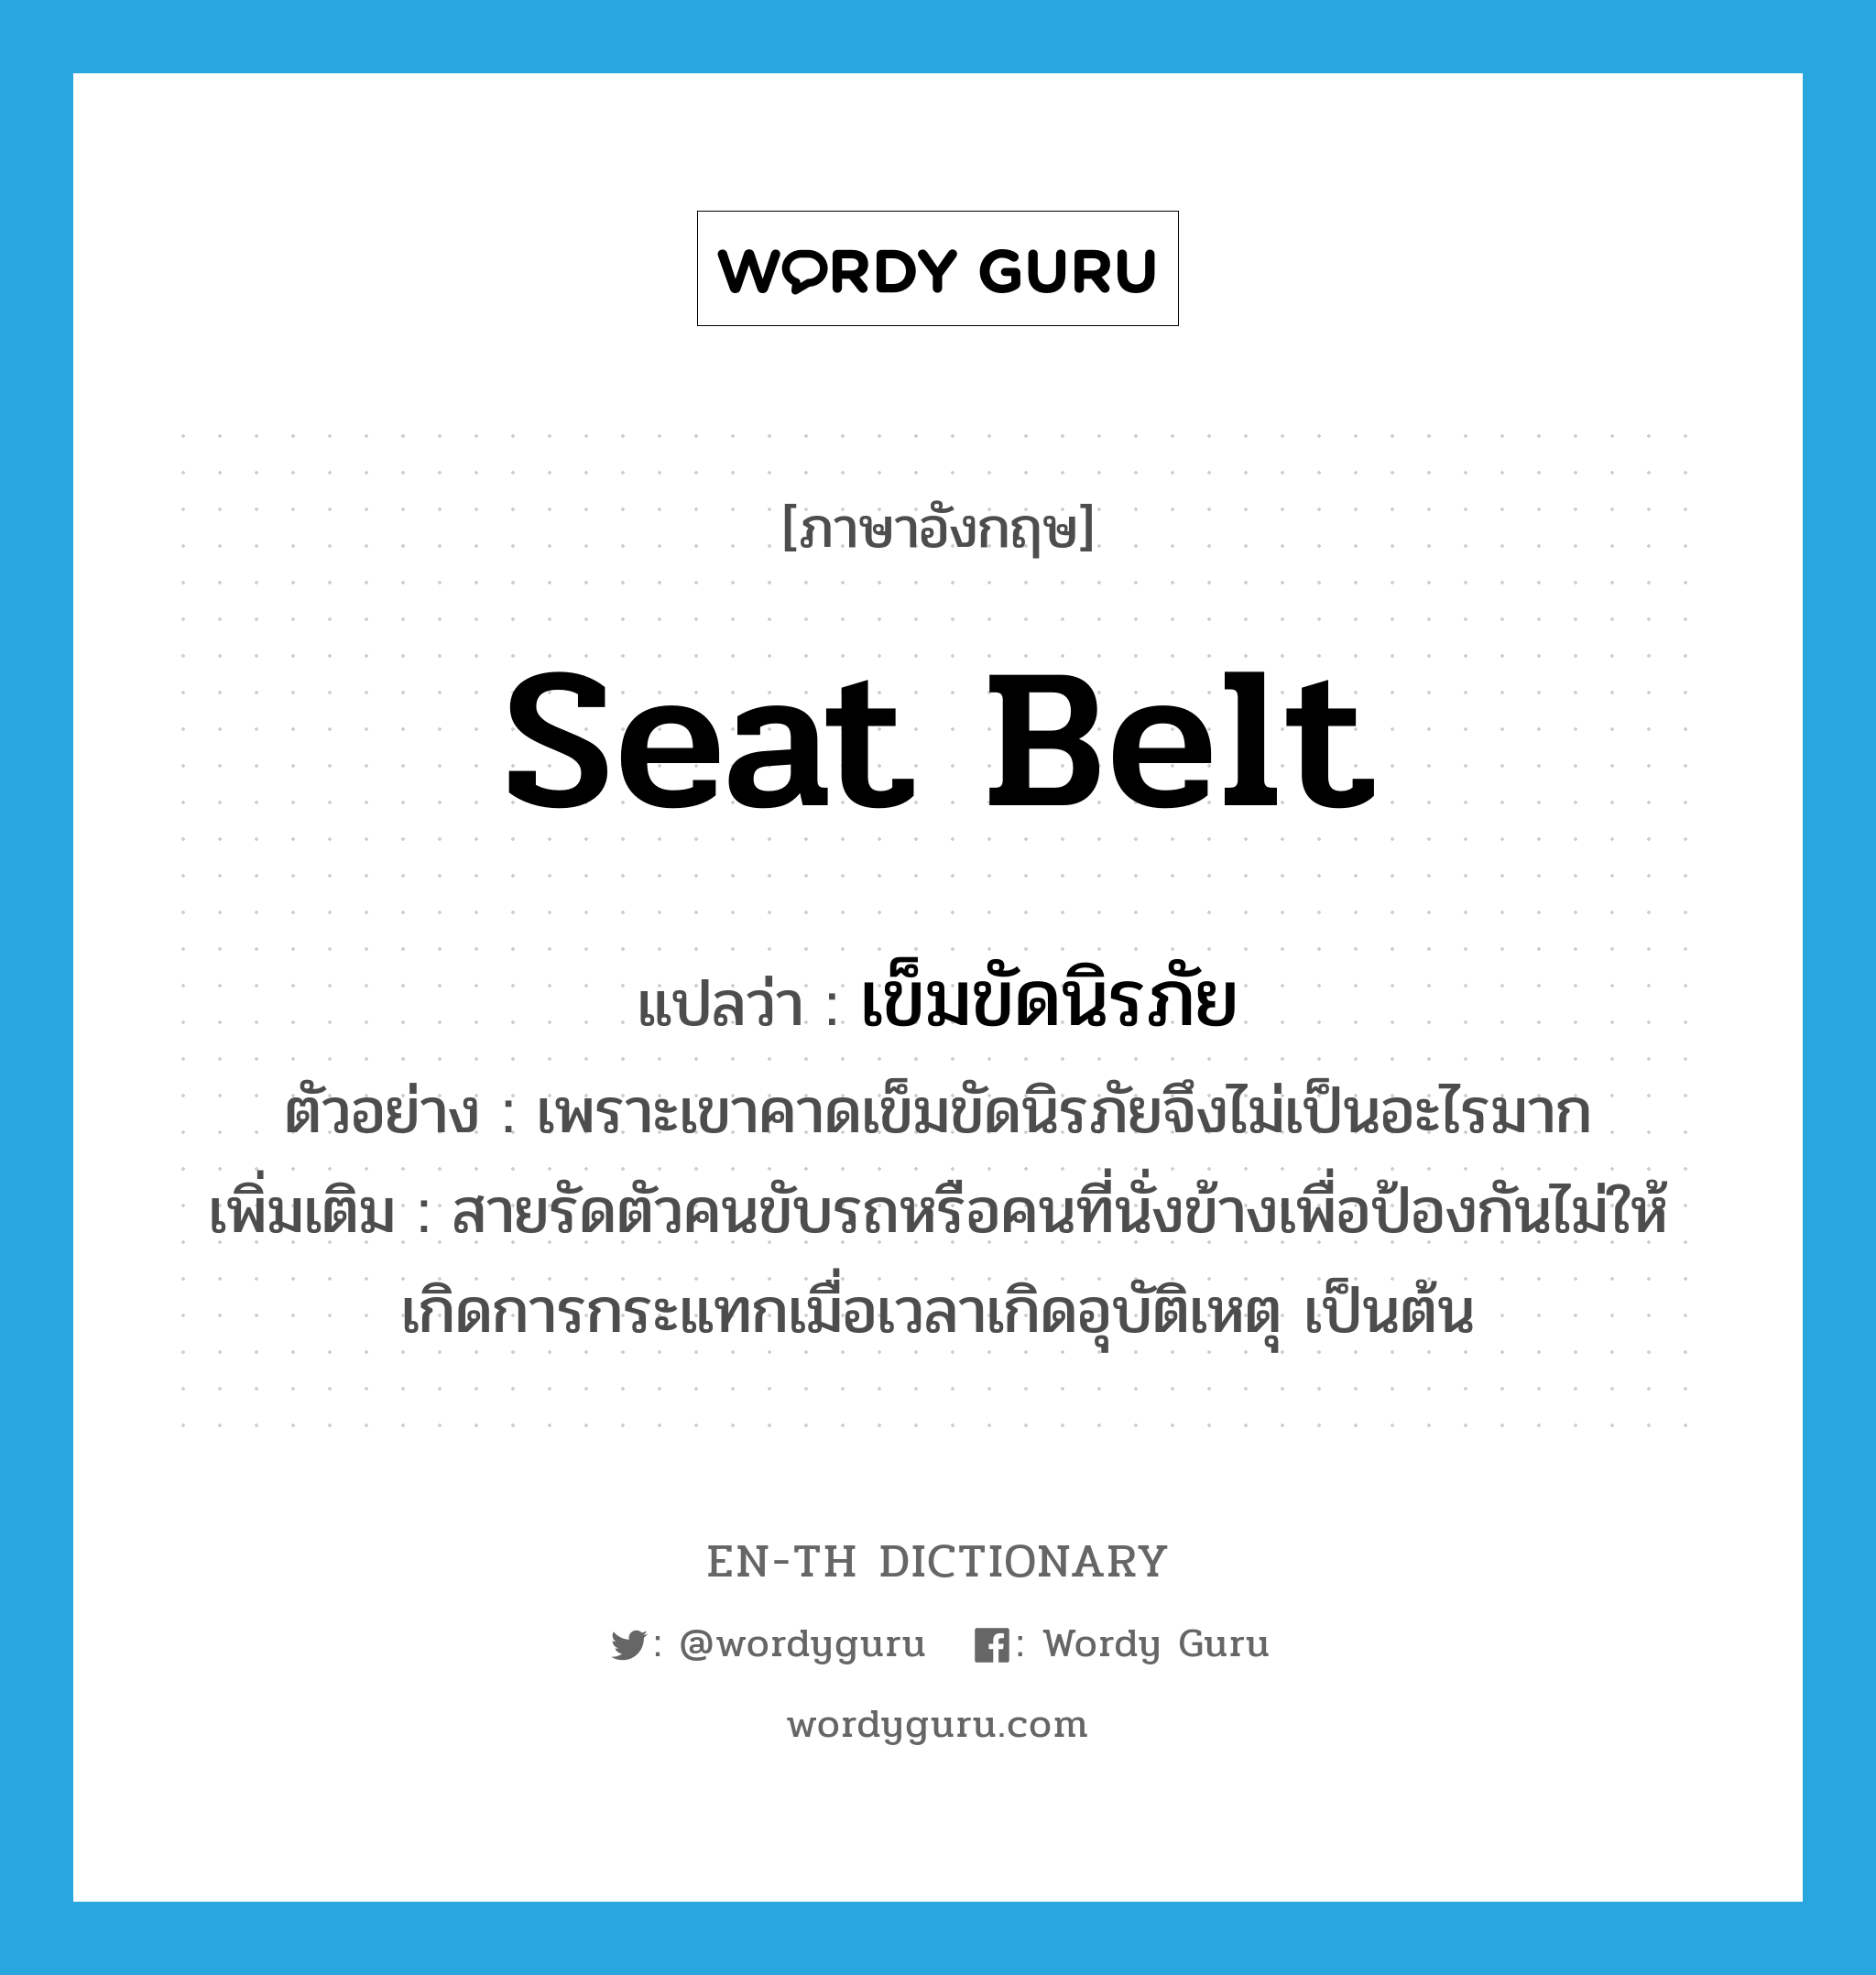 seat belt แปลว่า?, คำศัพท์ภาษาอังกฤษ seat belt แปลว่า เข็มขัดนิรภัย ประเภท N ตัวอย่าง เพราะเขาคาดเข็มขัดนิรภัยจึงไม่เป็นอะไรมาก เพิ่มเติม สายรัดตัวคนขับรถหรือคนที่นั่งข้างเพื่อป้องกันไม่ให้เกิดการกระแทกเมื่อเวลาเกิดอุบัติเหตุ เป็นต้น หมวด N